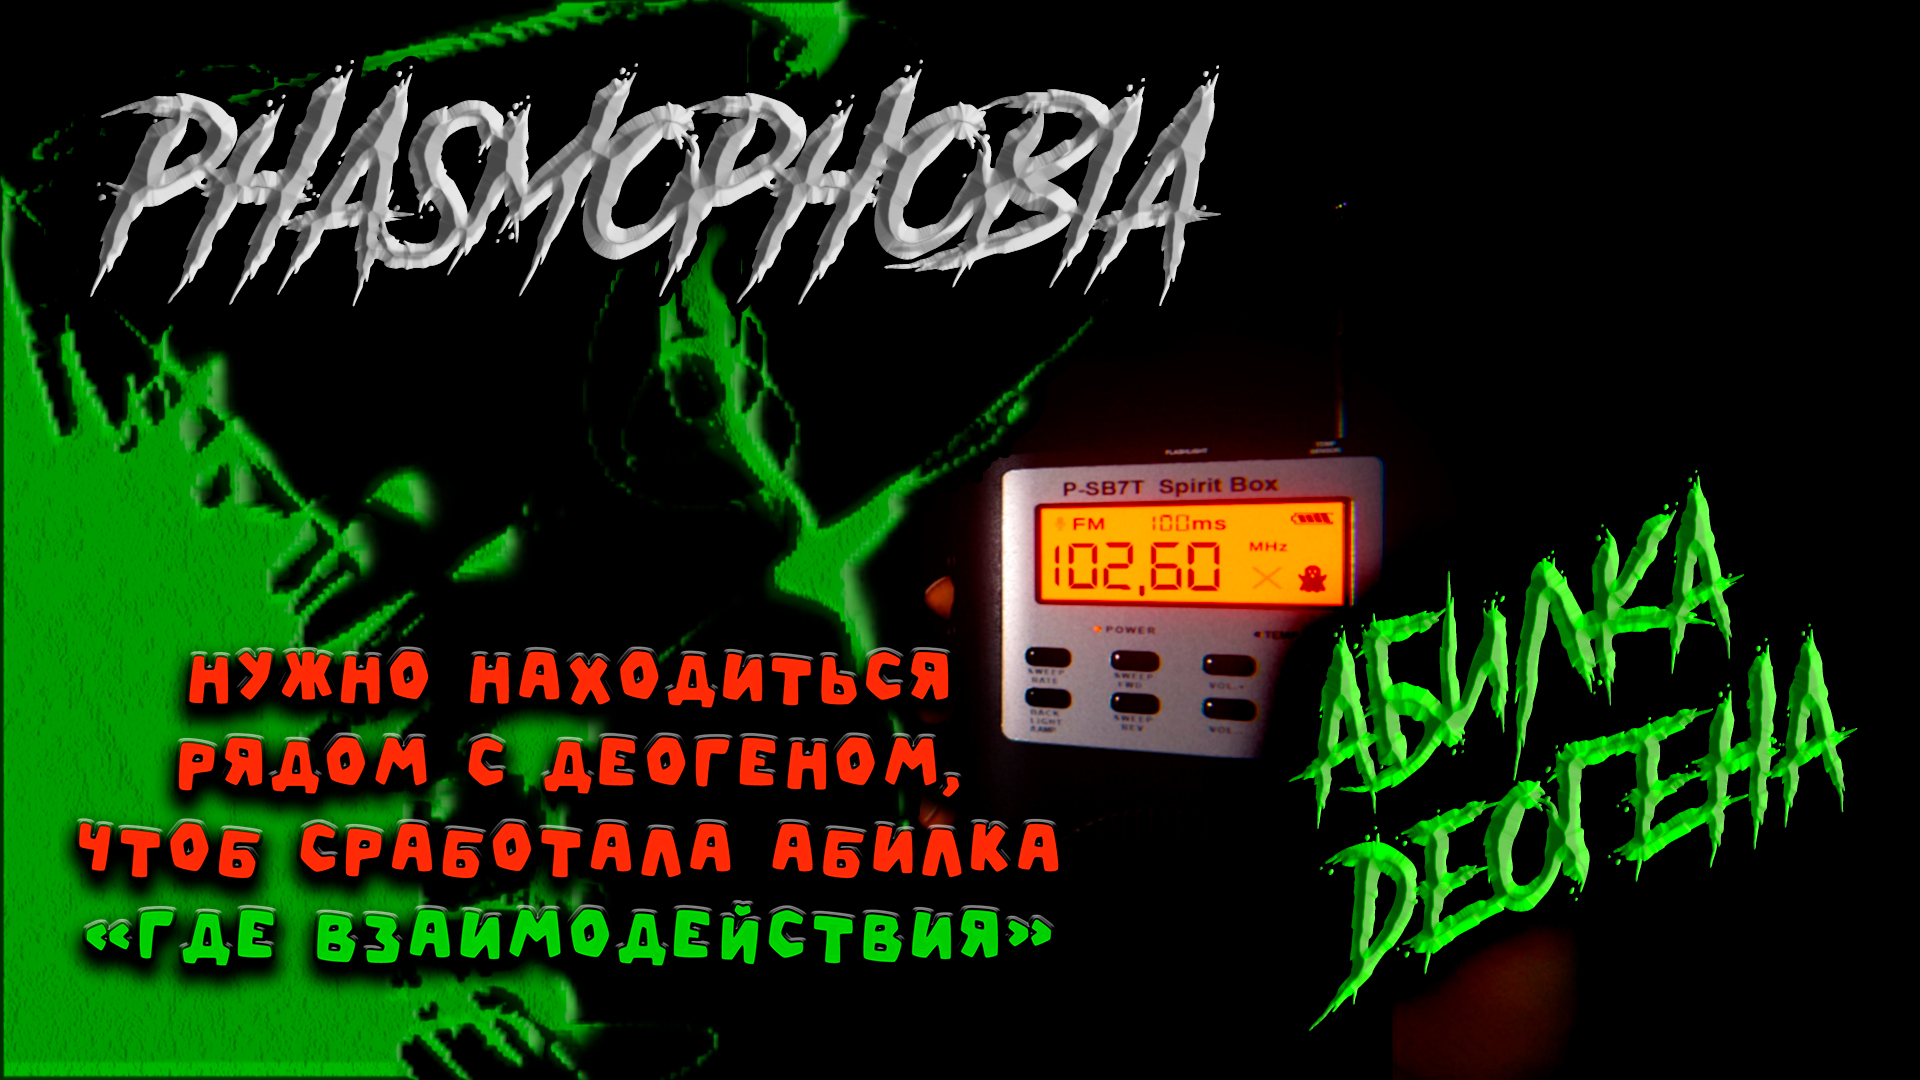 Phasmophobia music box купить фото 90